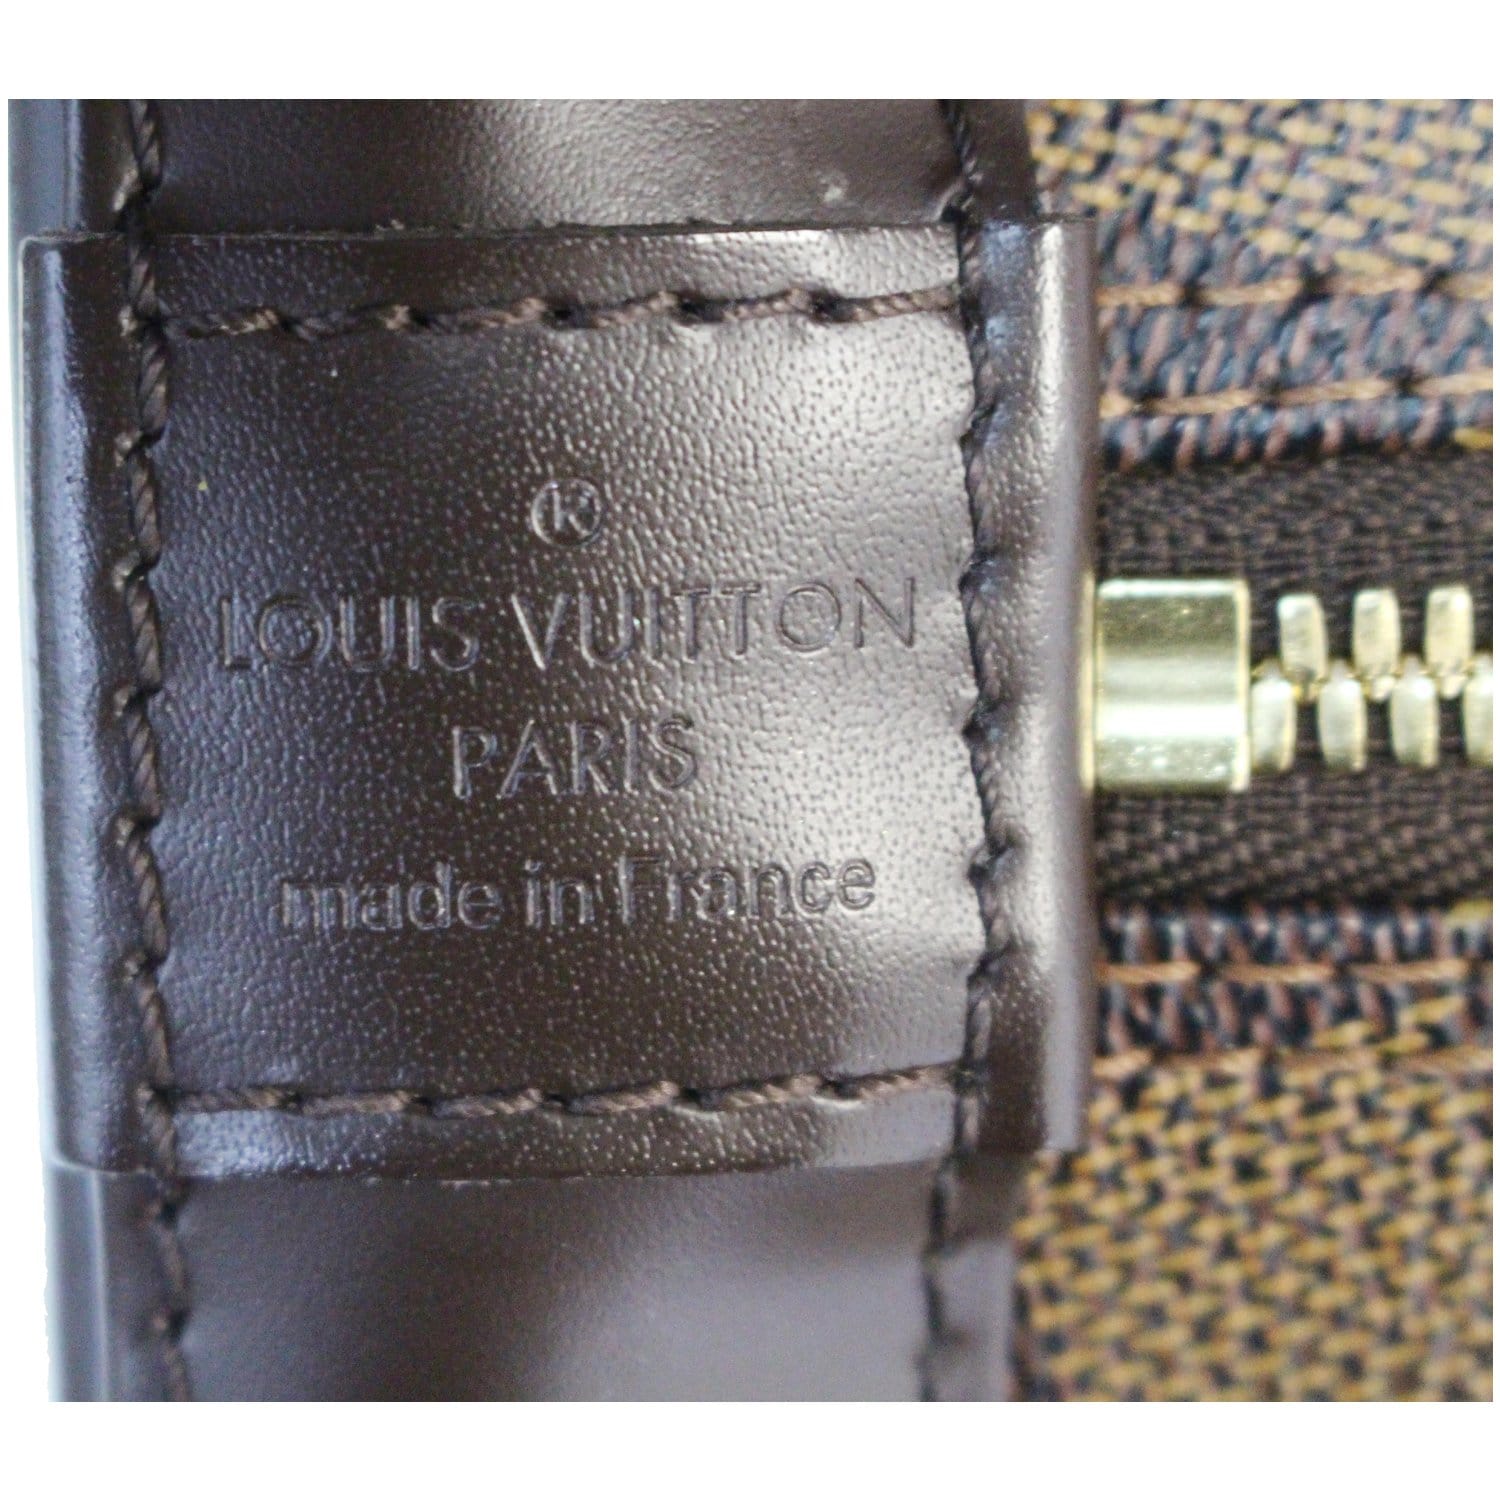 LV Louis Vuitton Alma PM Handbag Damiere Ebene Brown Canvas Bag - VGC